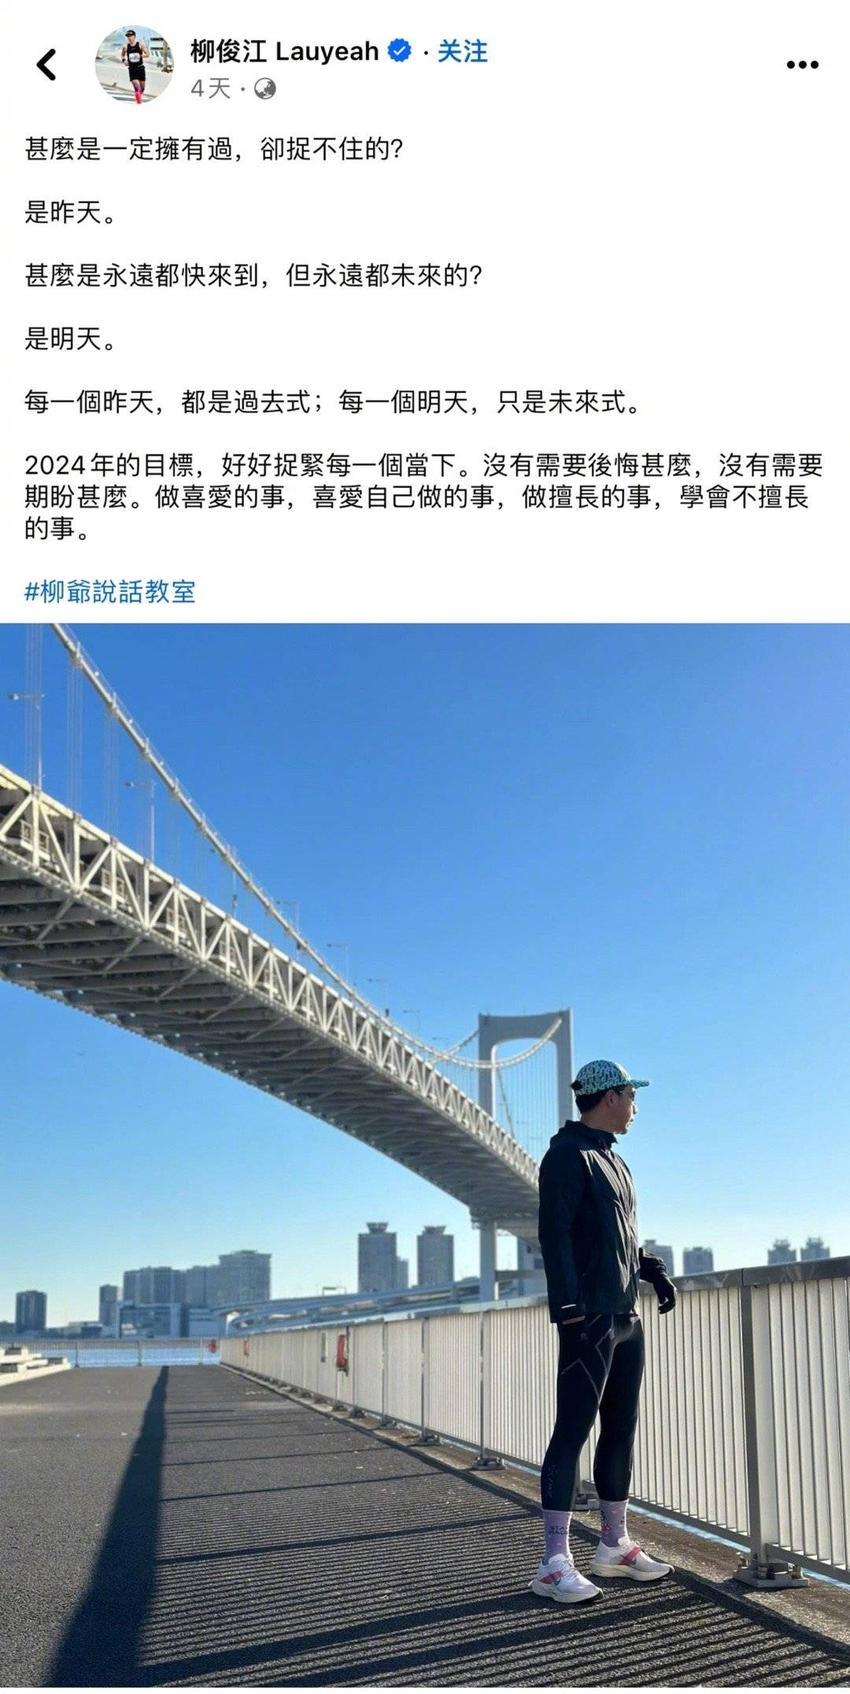 TVB前主播柳俊江被发现在屋内烧炭身亡 享年42岁